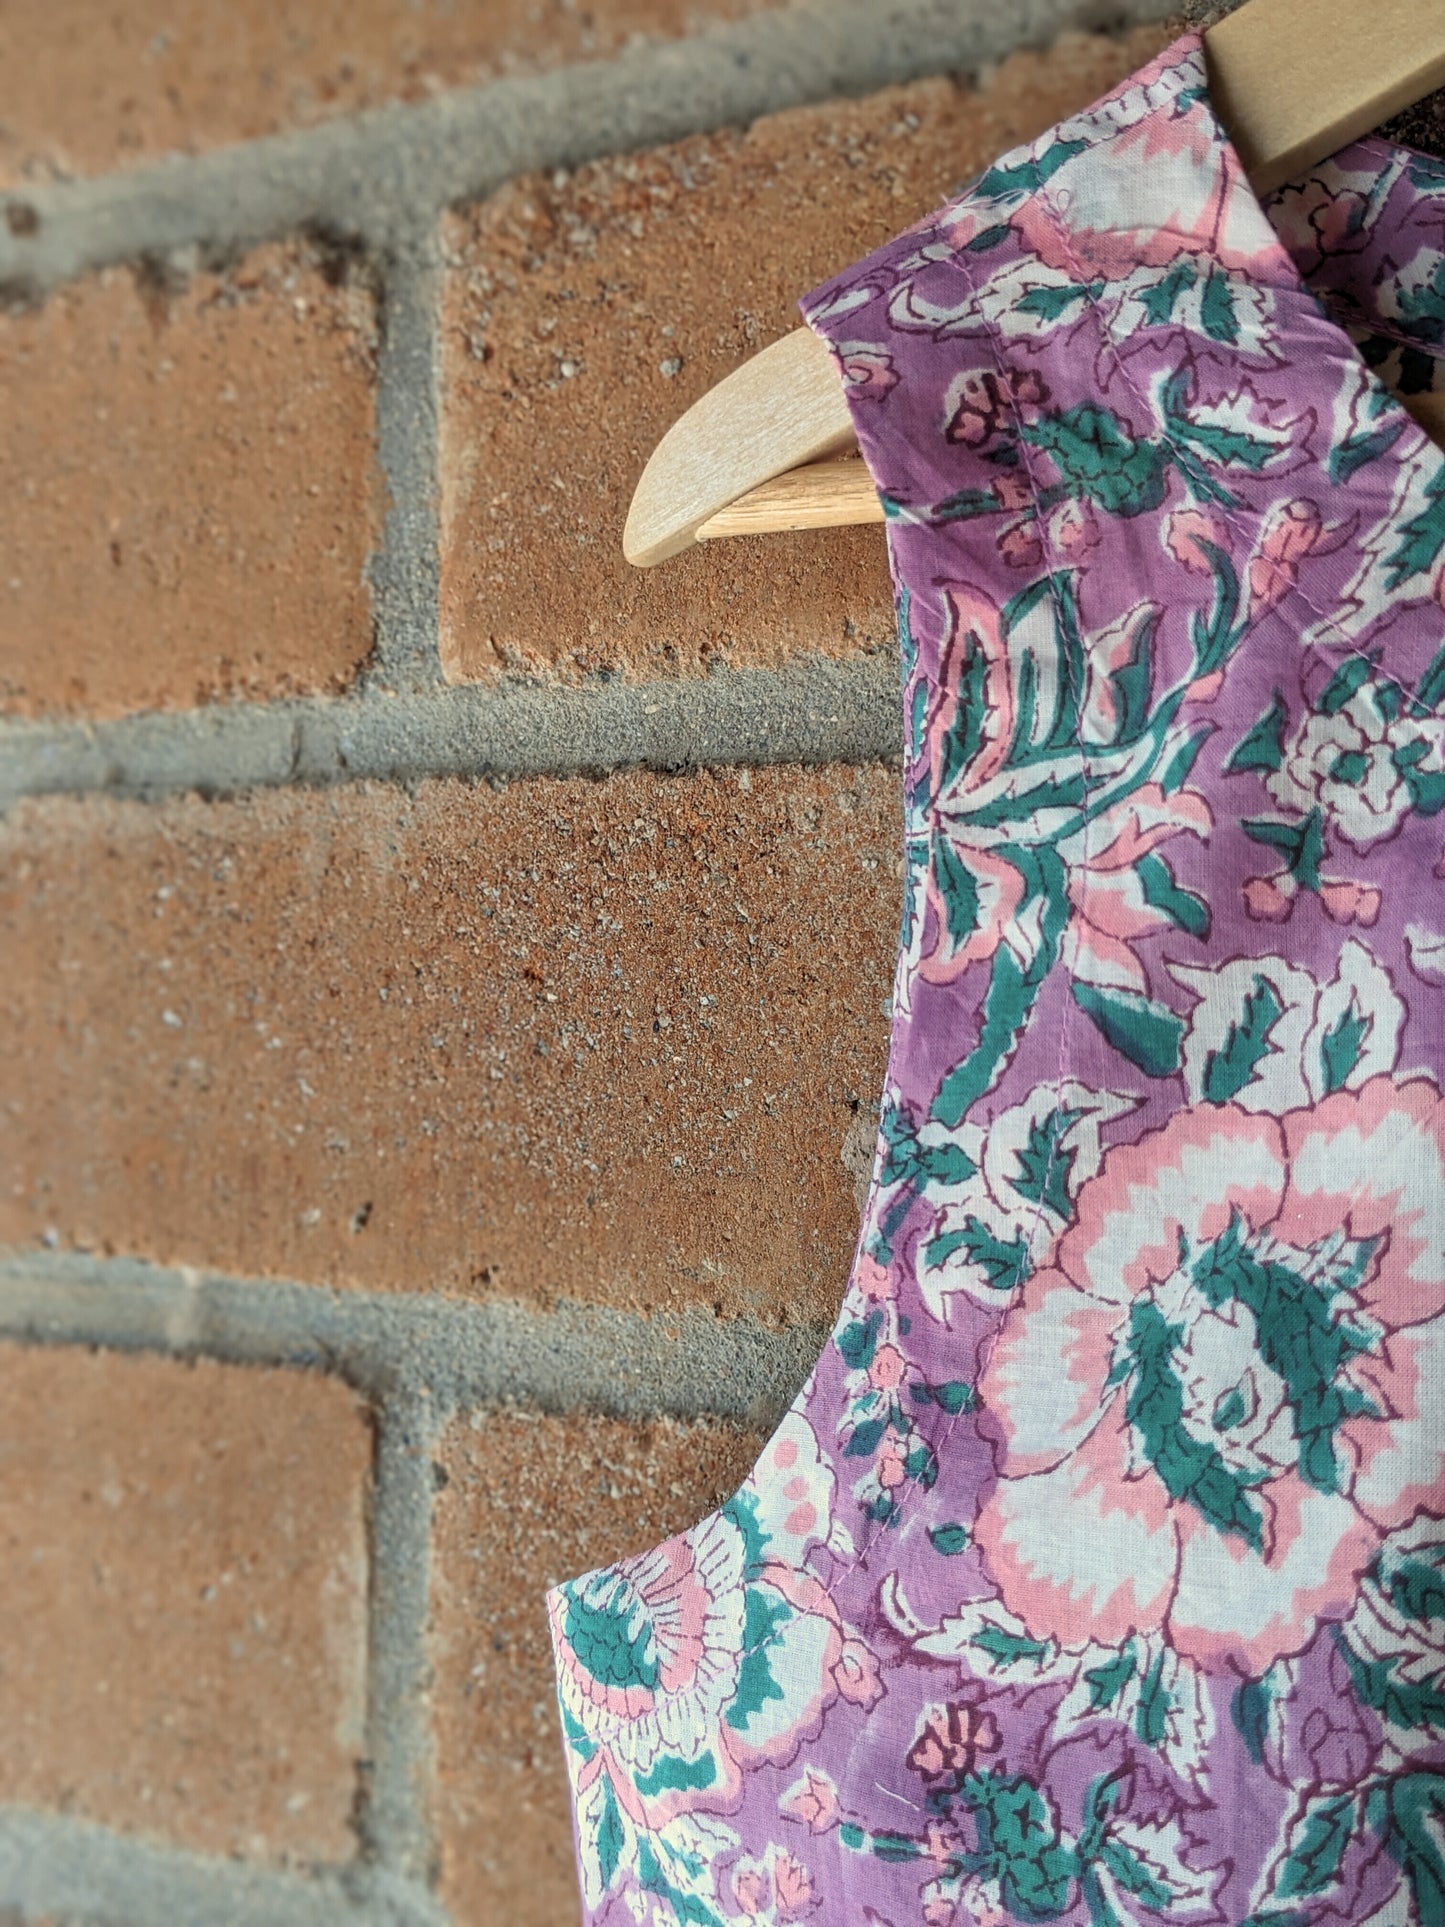 Women's Cotton Sleeveless Top - Pink -Block Print - Closeup Image